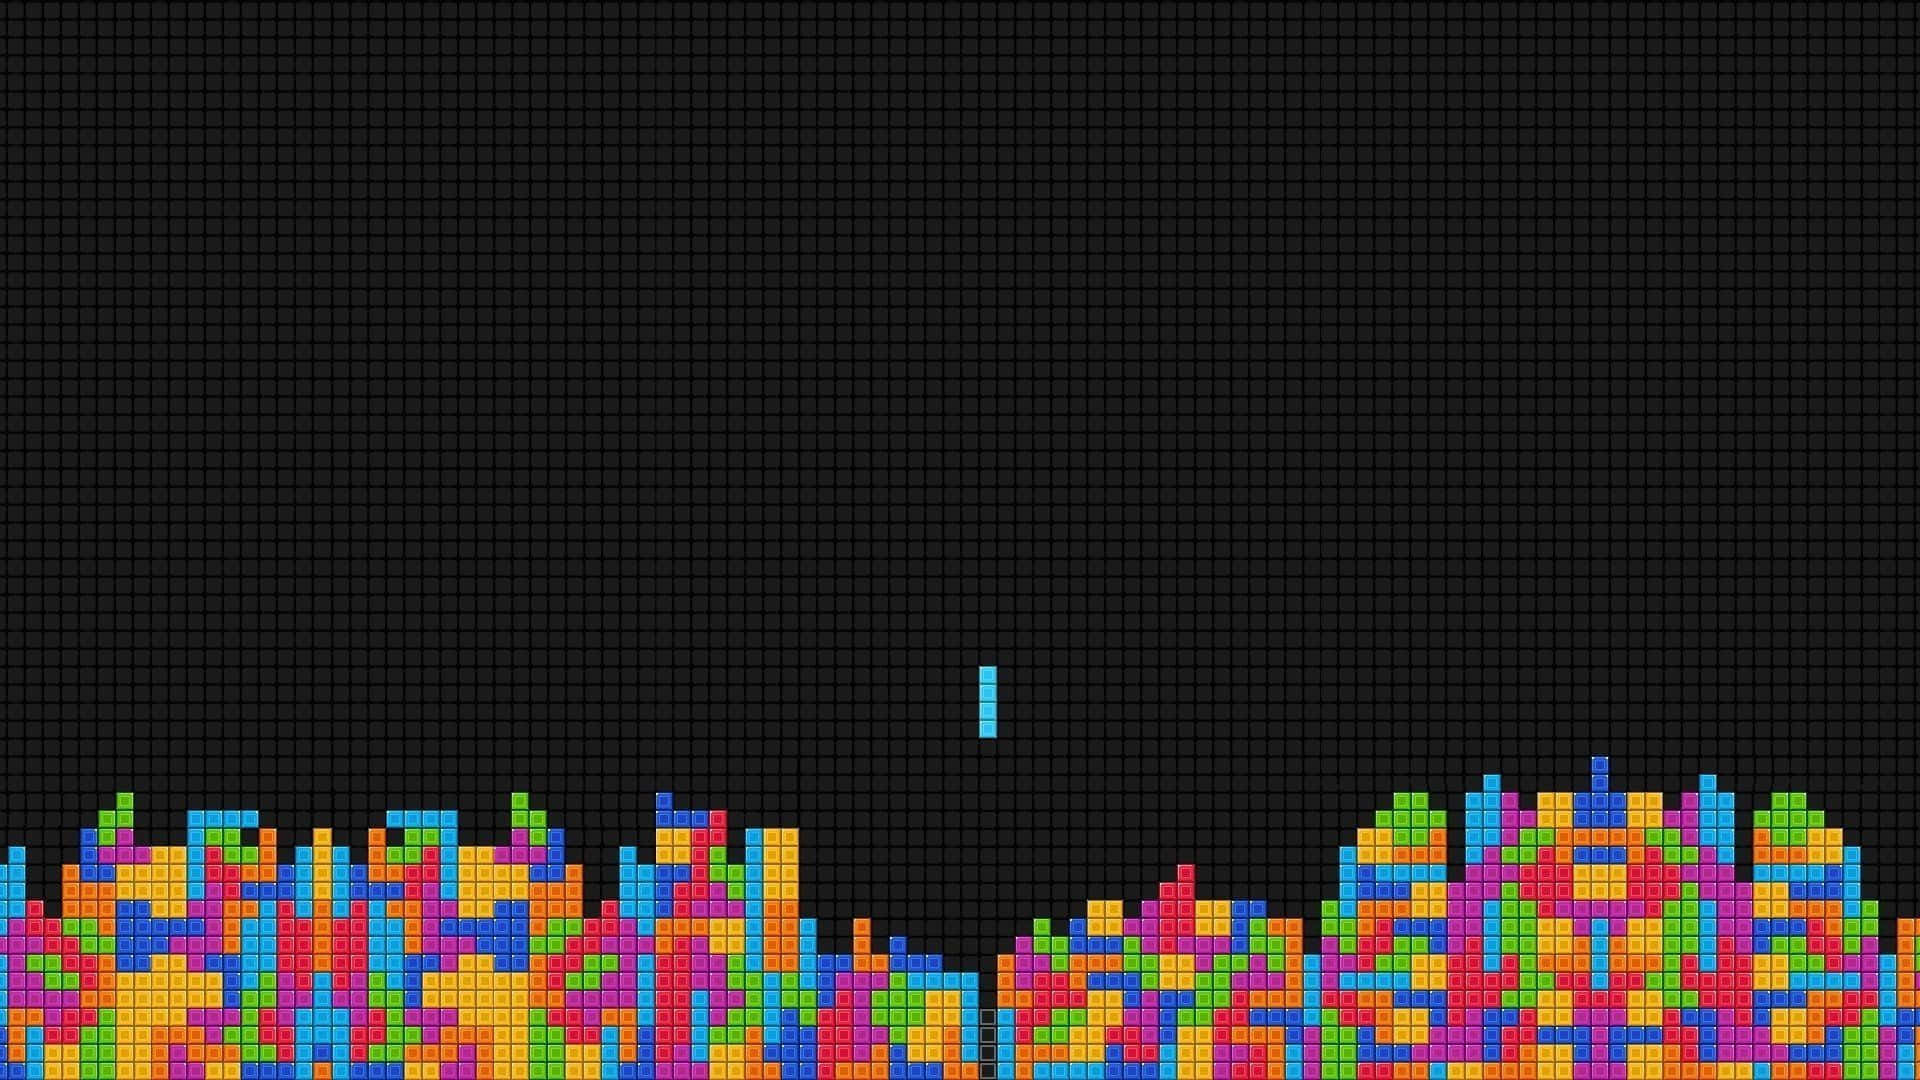 Bloquesde Tetris Vibrantes Cayendo En Su Lugar